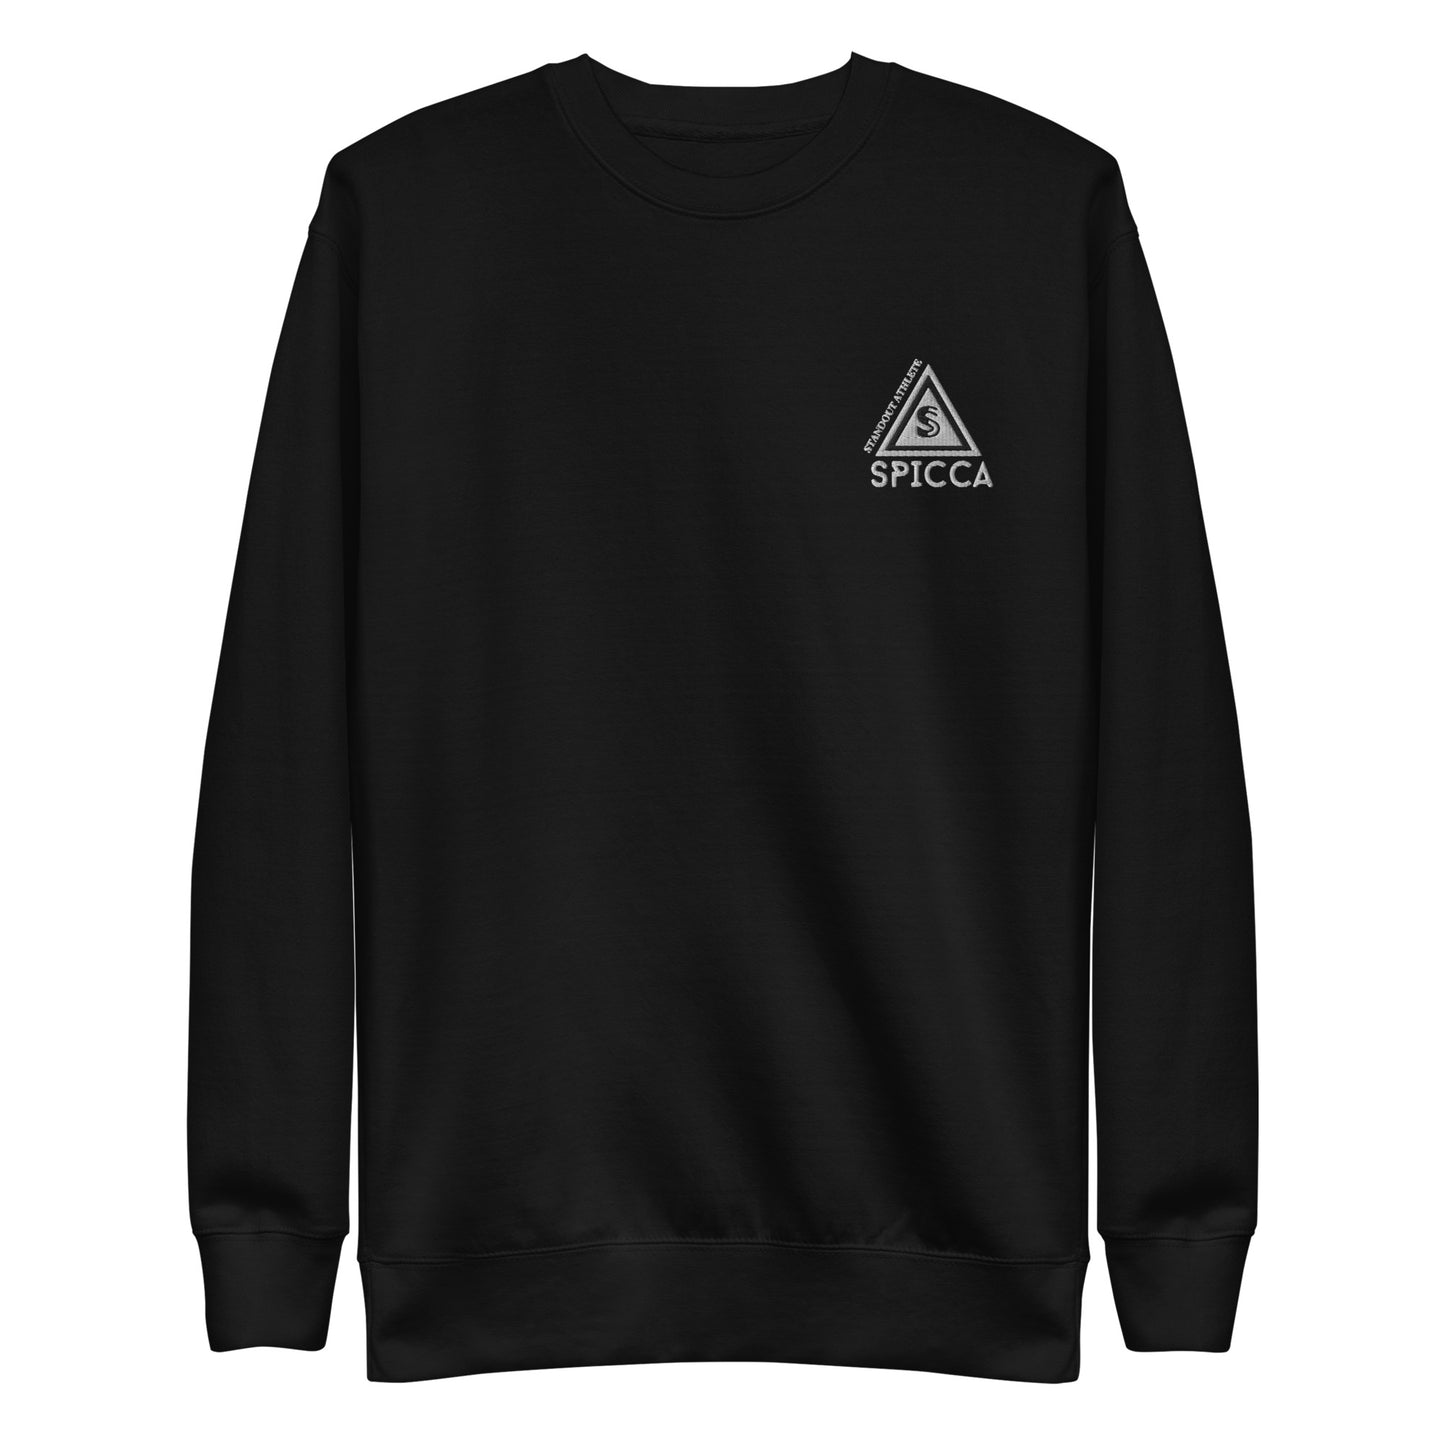 SPICCA STANDOUT ATHLETE Embroidered Logo Unisex Premium Sweatshirt